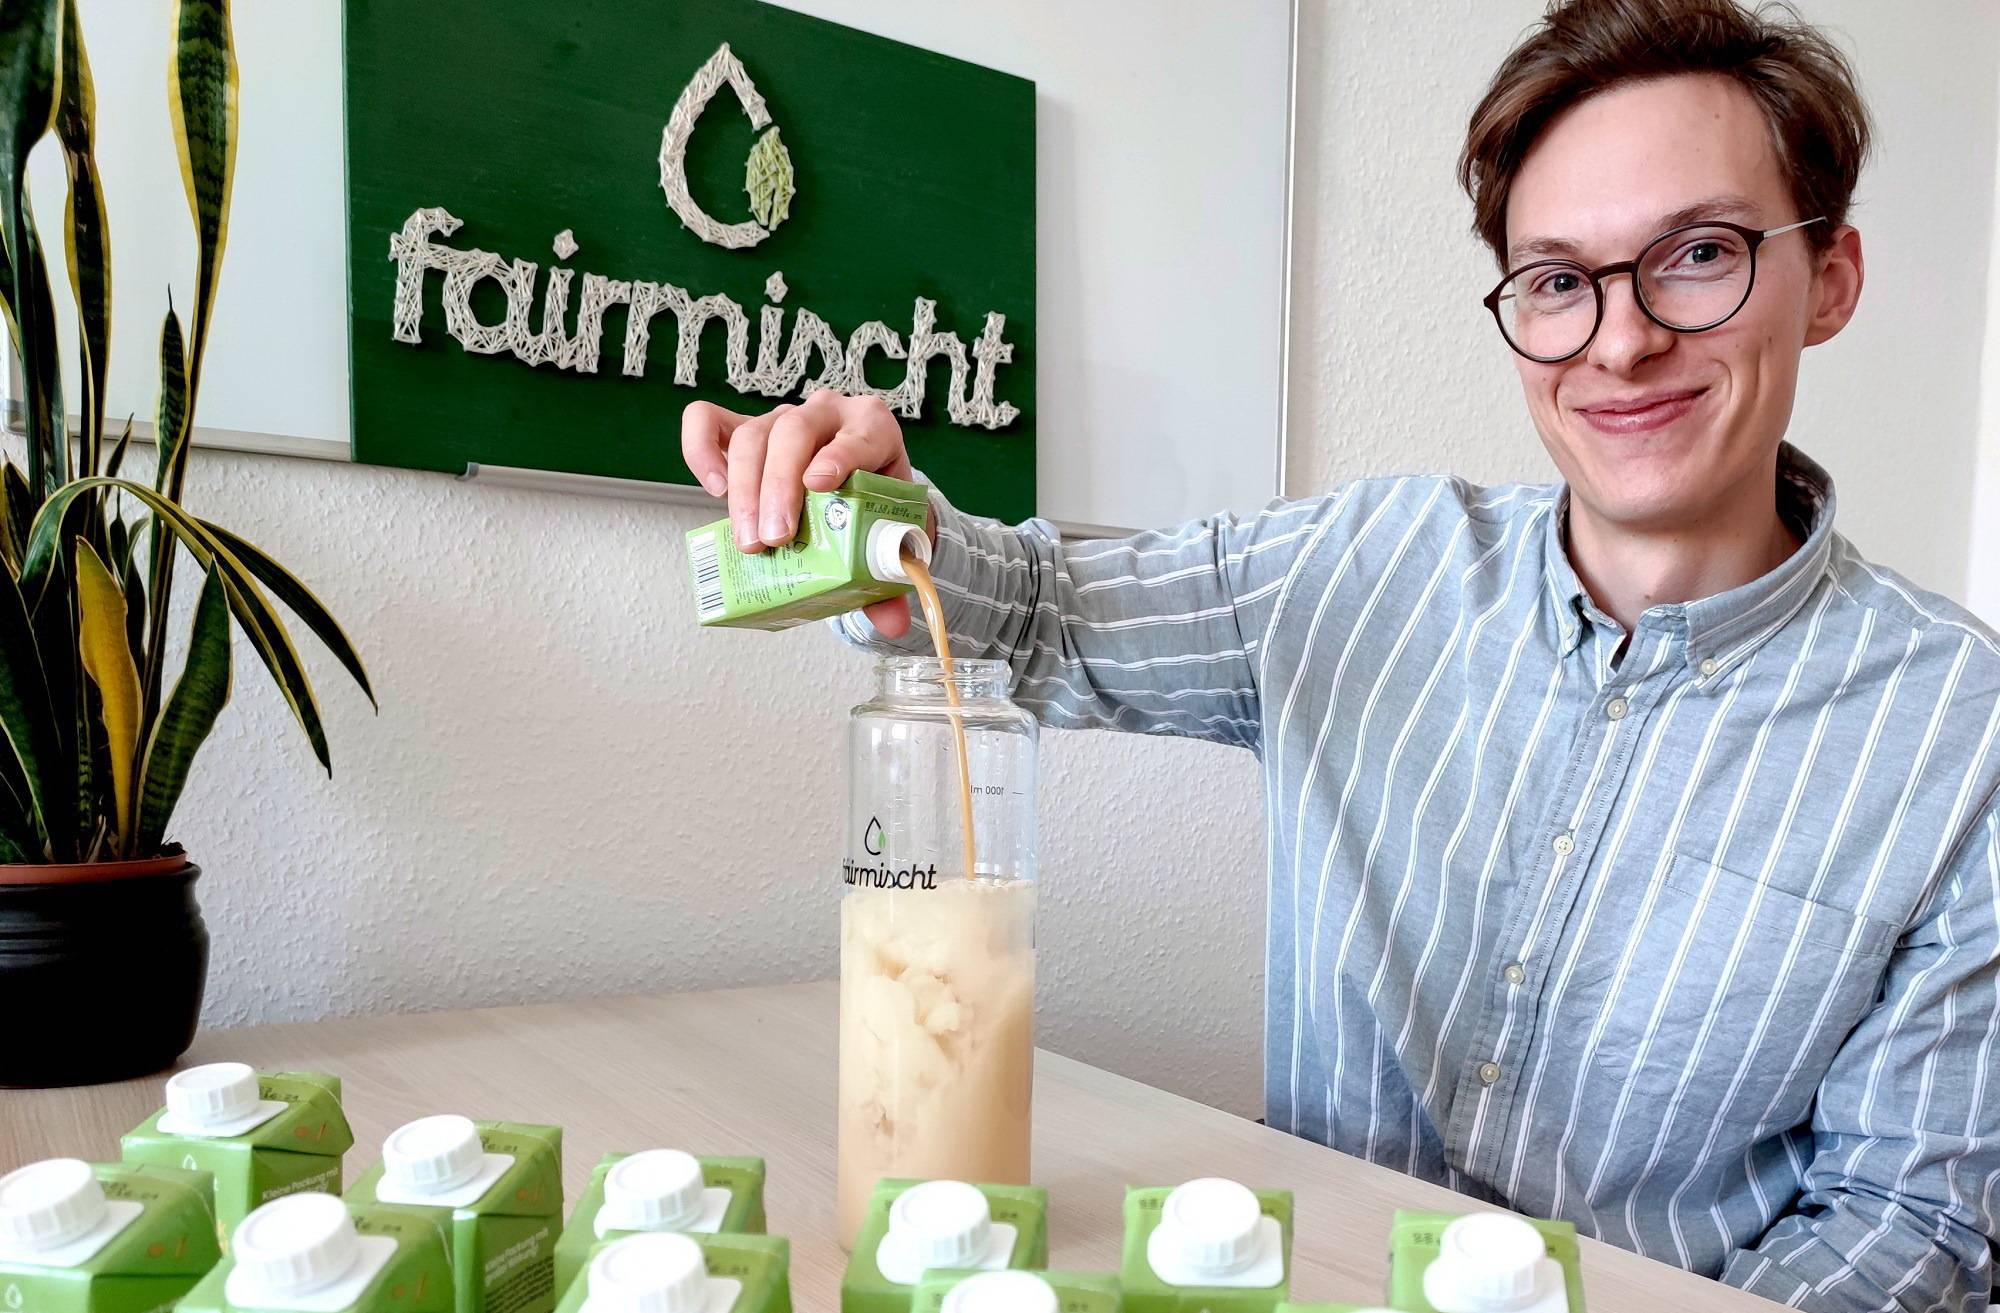  Mit seiner Schwerster Melissa und Studienfreund Mario Fluck gründete Dimitri Petersen das Start-up „fairmischt“.  